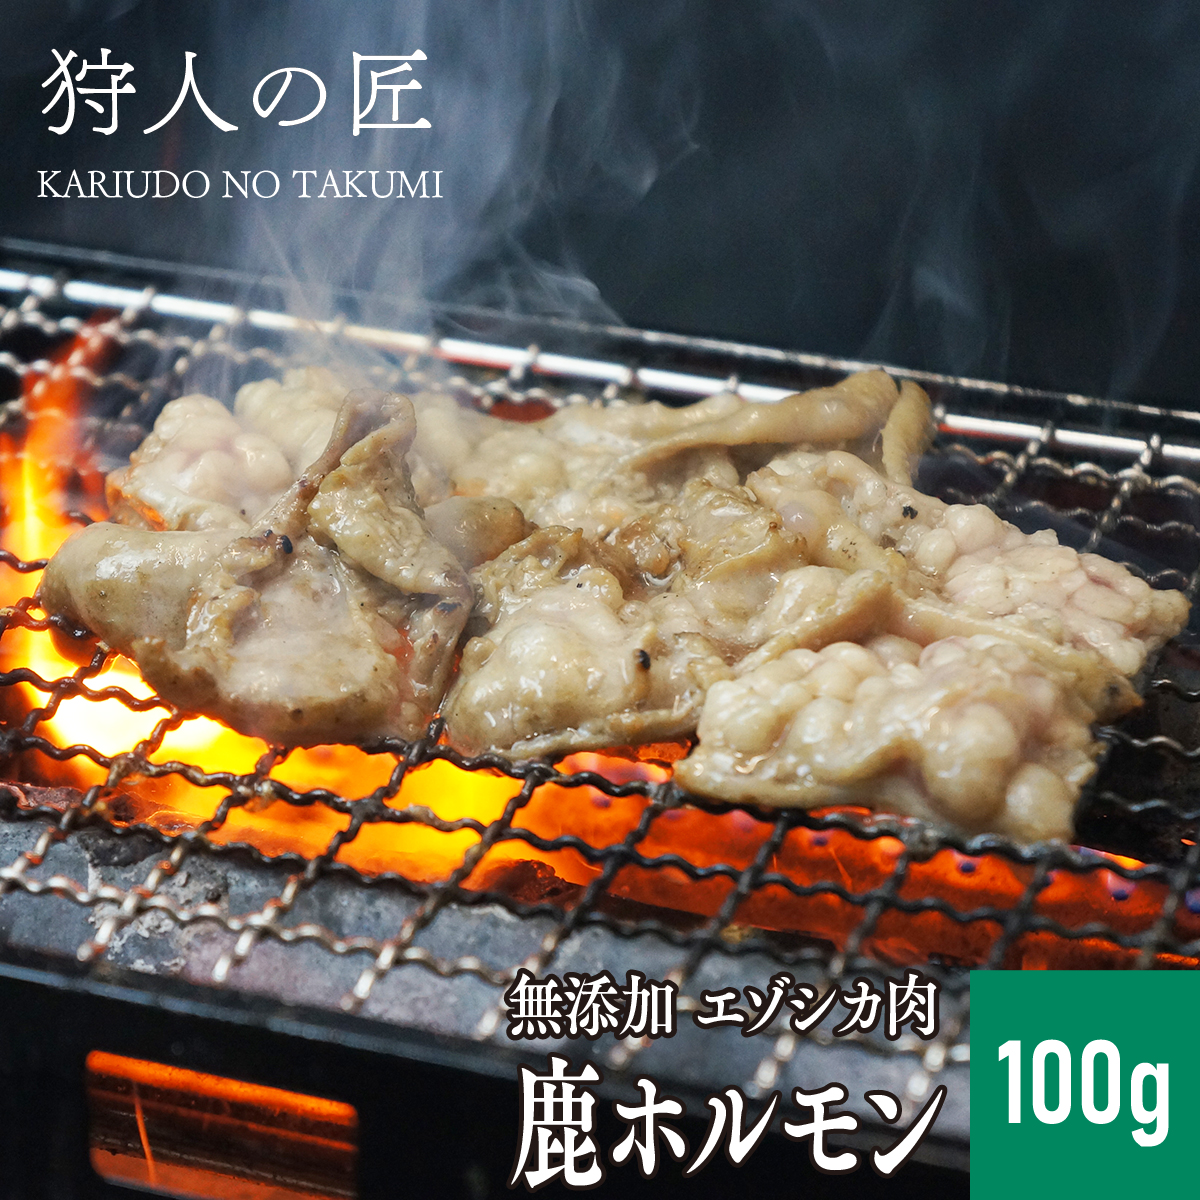 エゾ鹿肉 -加工品- ホルモン (大腸) 100g